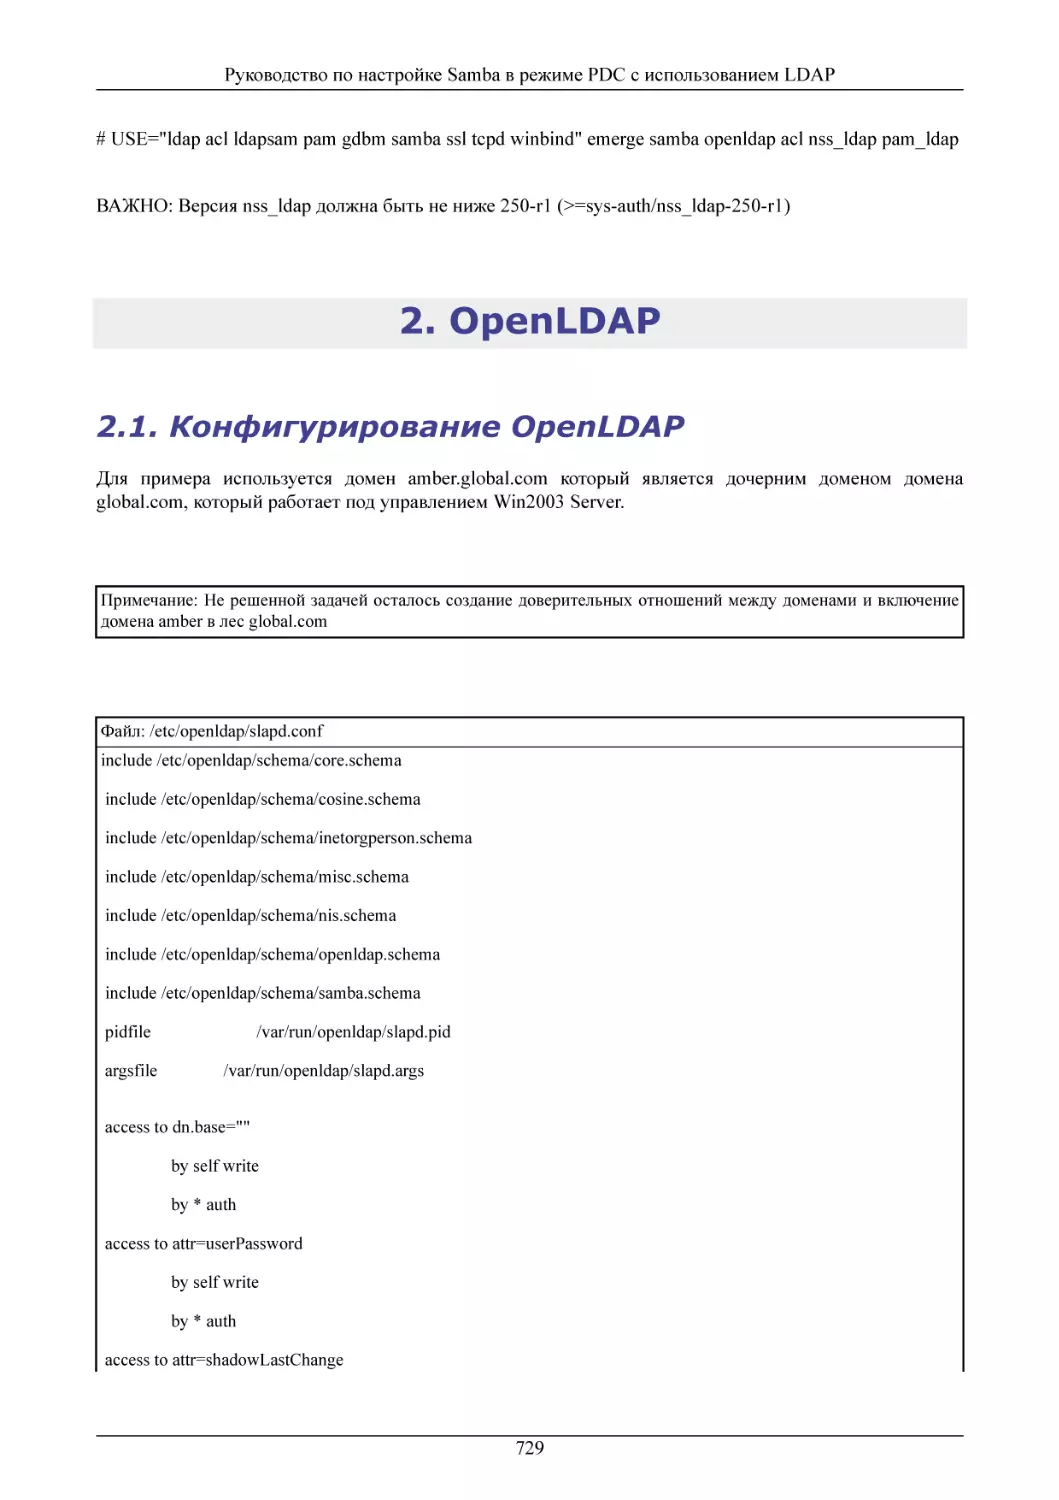 OpenLDAP
Конфигурирование OpenLDAP